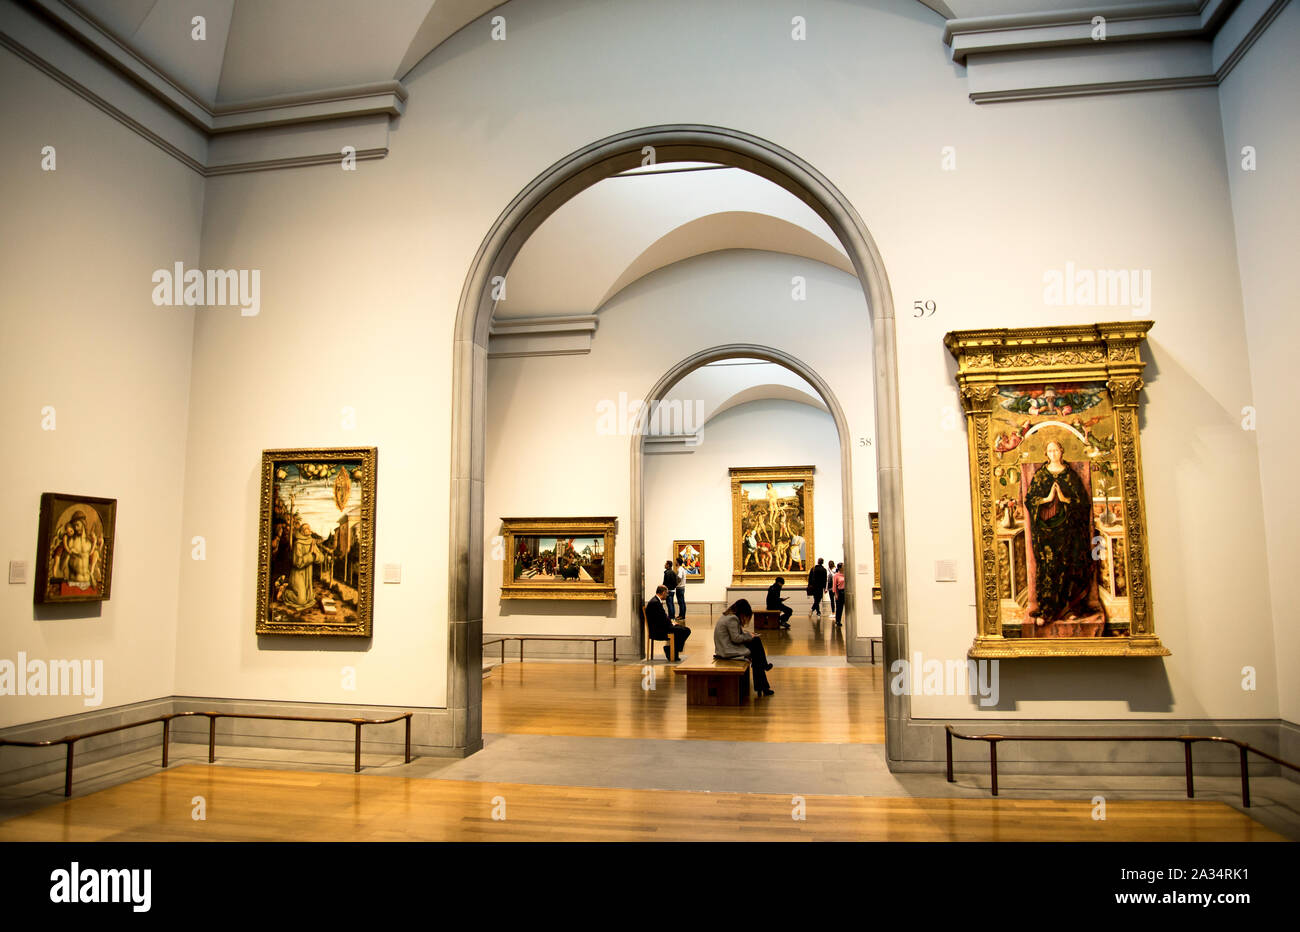 Innen in der National Portrait Gallery, London, Vereinigtes Königreich Stockfoto